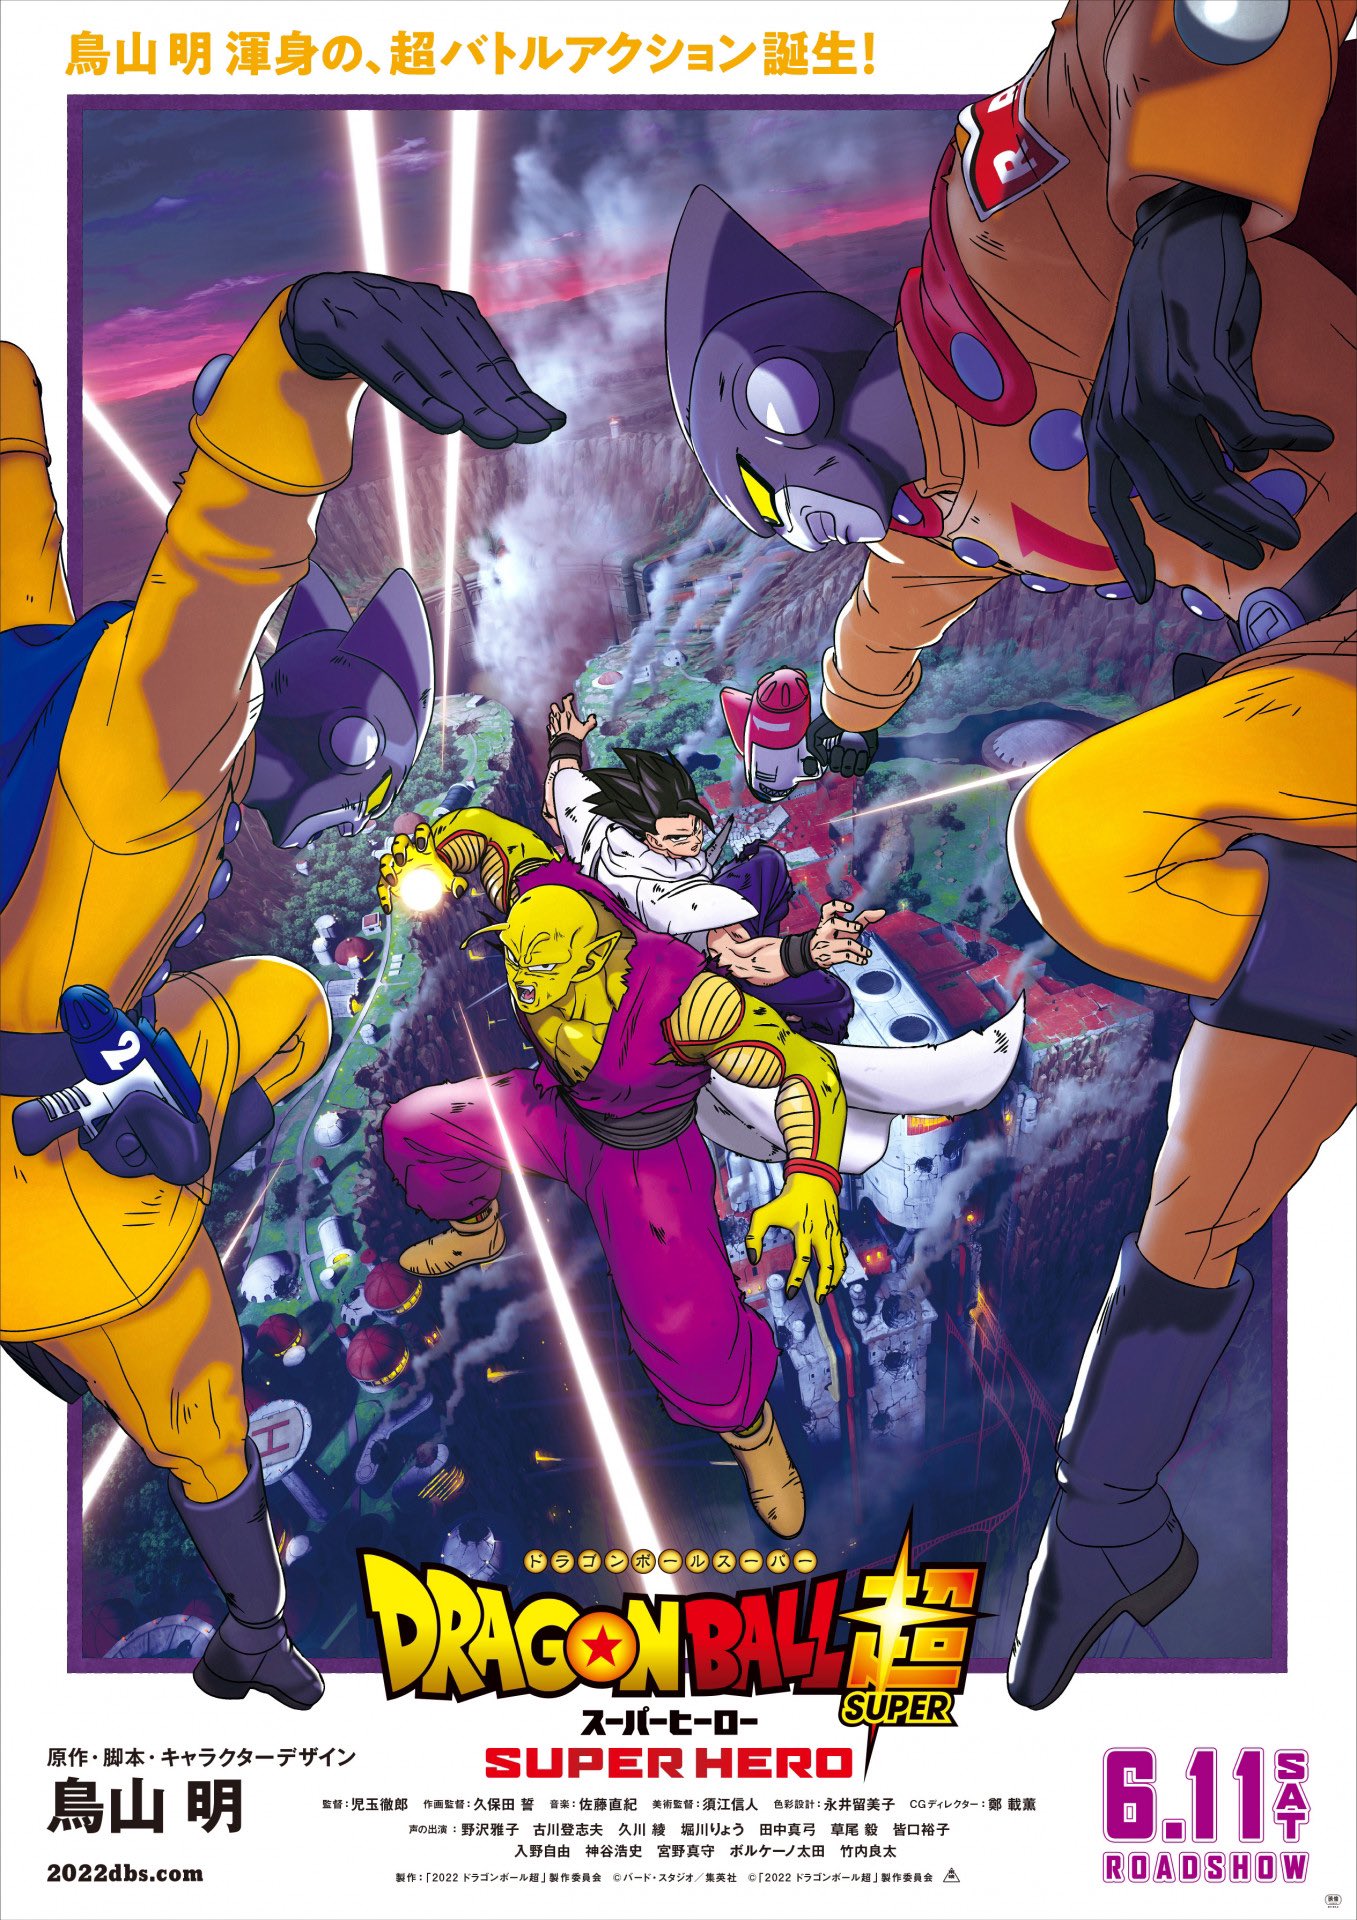 Canal Budokai on X: DRAGON BALL SUPER: SUPER HERO LEGENDADO EM PT-BR! Como  o filme já não está mais em cartaz e nem temos previsão para ele entrar  oficialmente em algum streaming